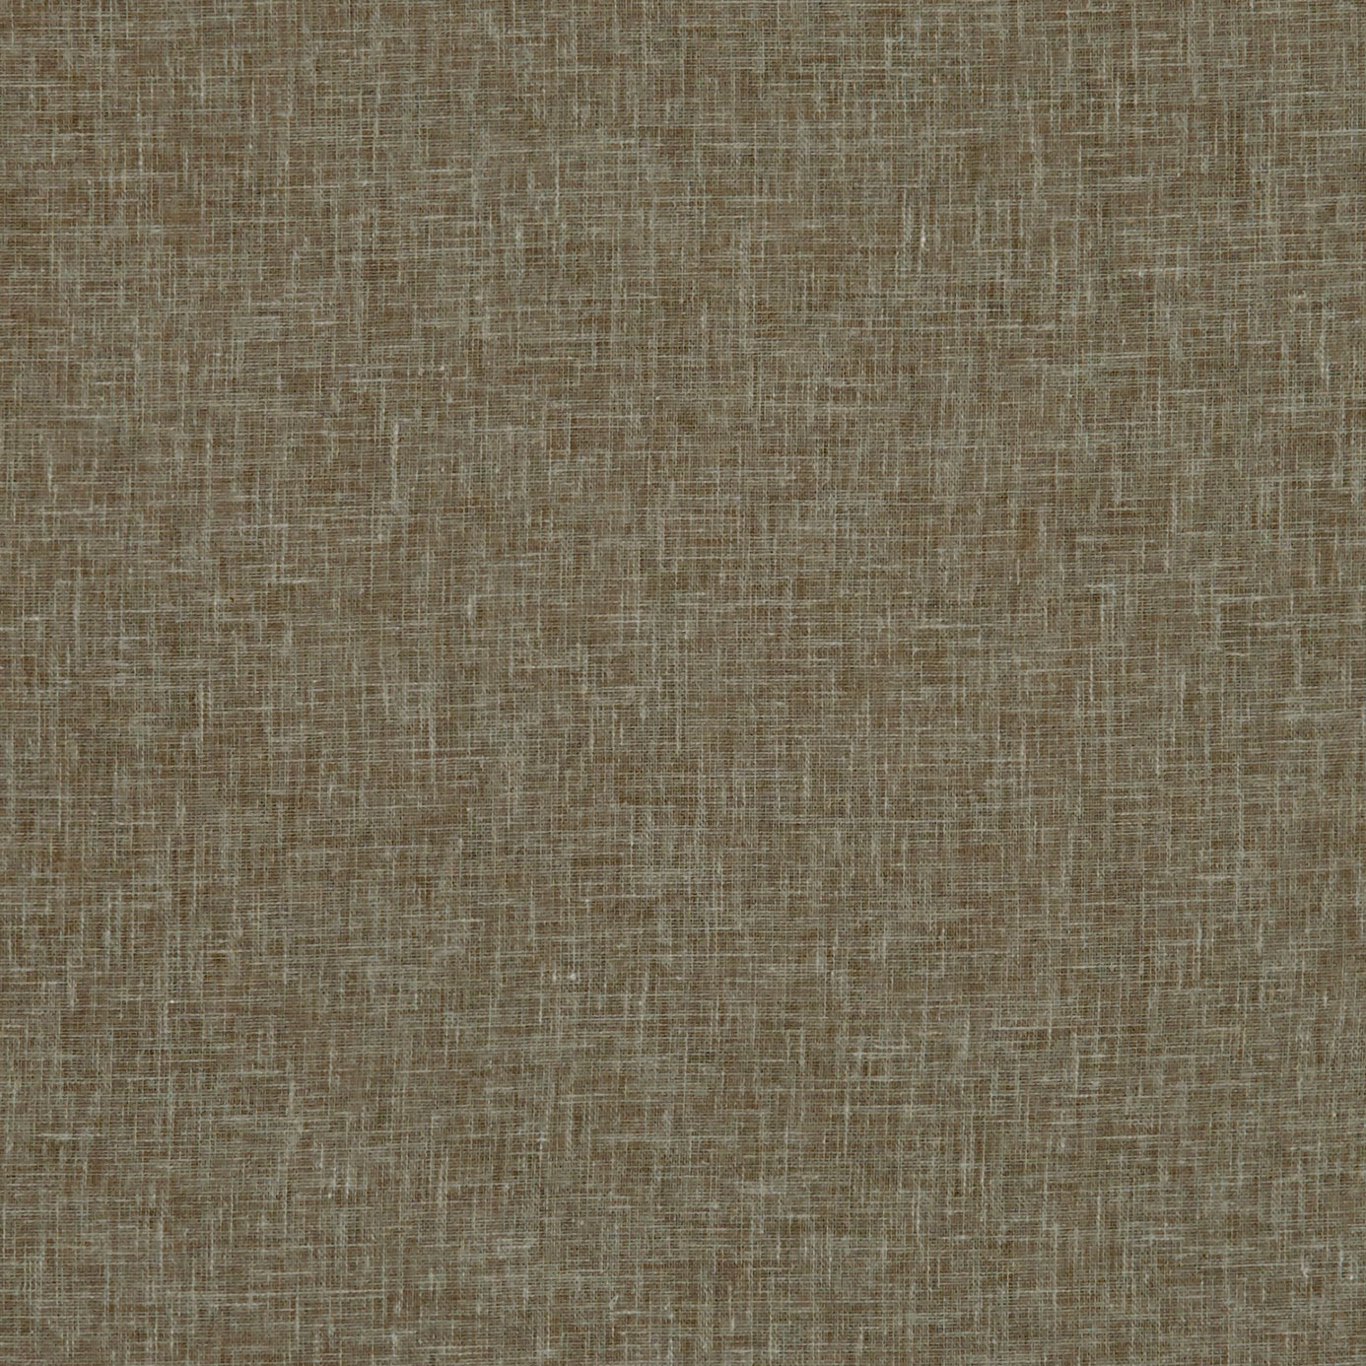 Midori Truffle Fabric by CNC